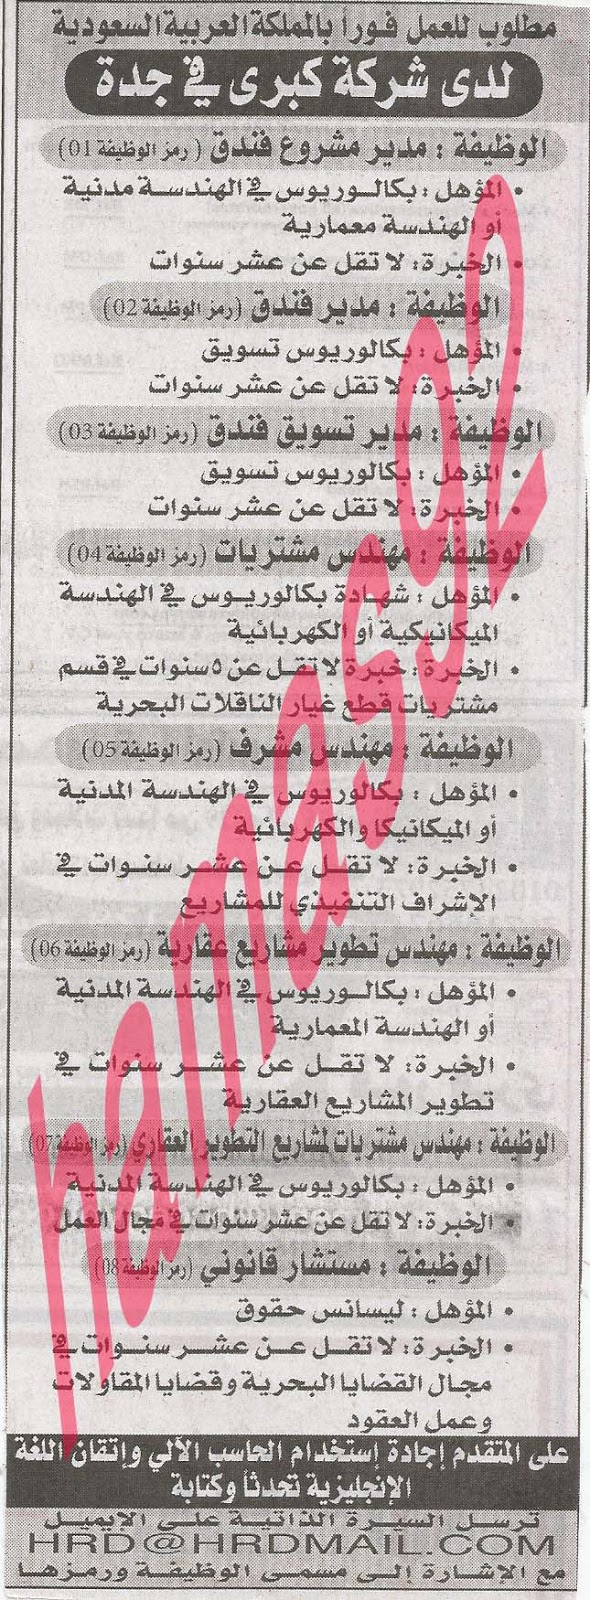 وظائف خالية فى دول الخليج بجريدة الاهرام الجمعة 23-08-2013 18